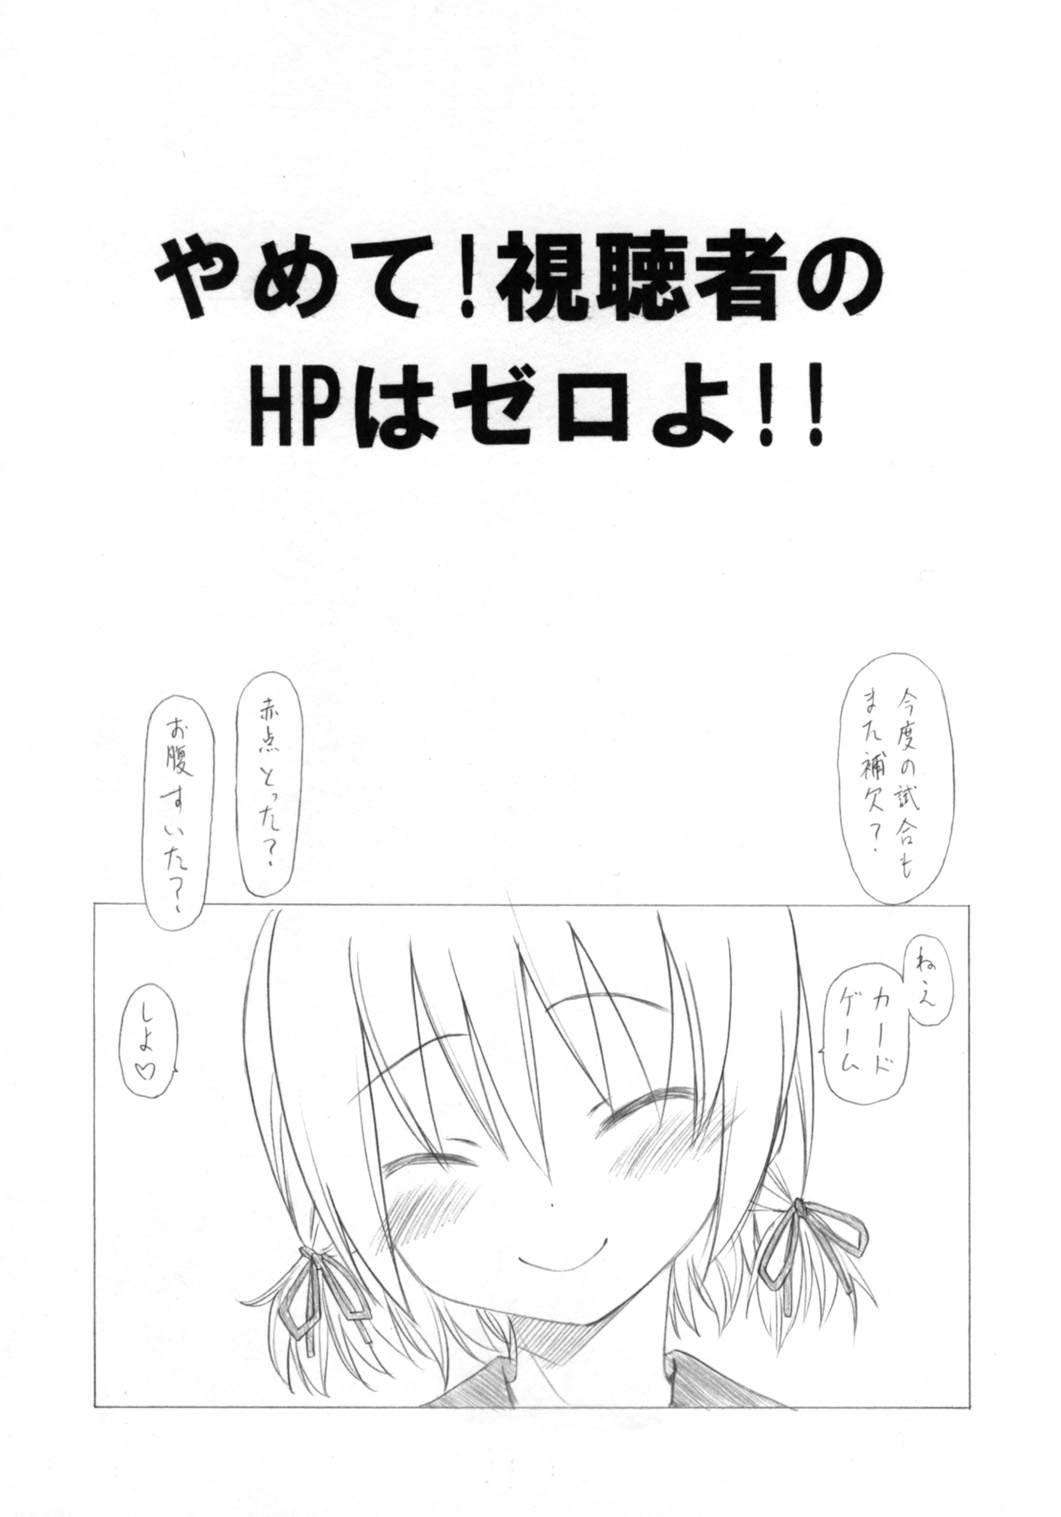 (CSP5) [UROBOROS (Utatane Hiroyuki)] Yamete! Shichousha no HP wa Zero yo !! (Bushiroad CM) page 1 full